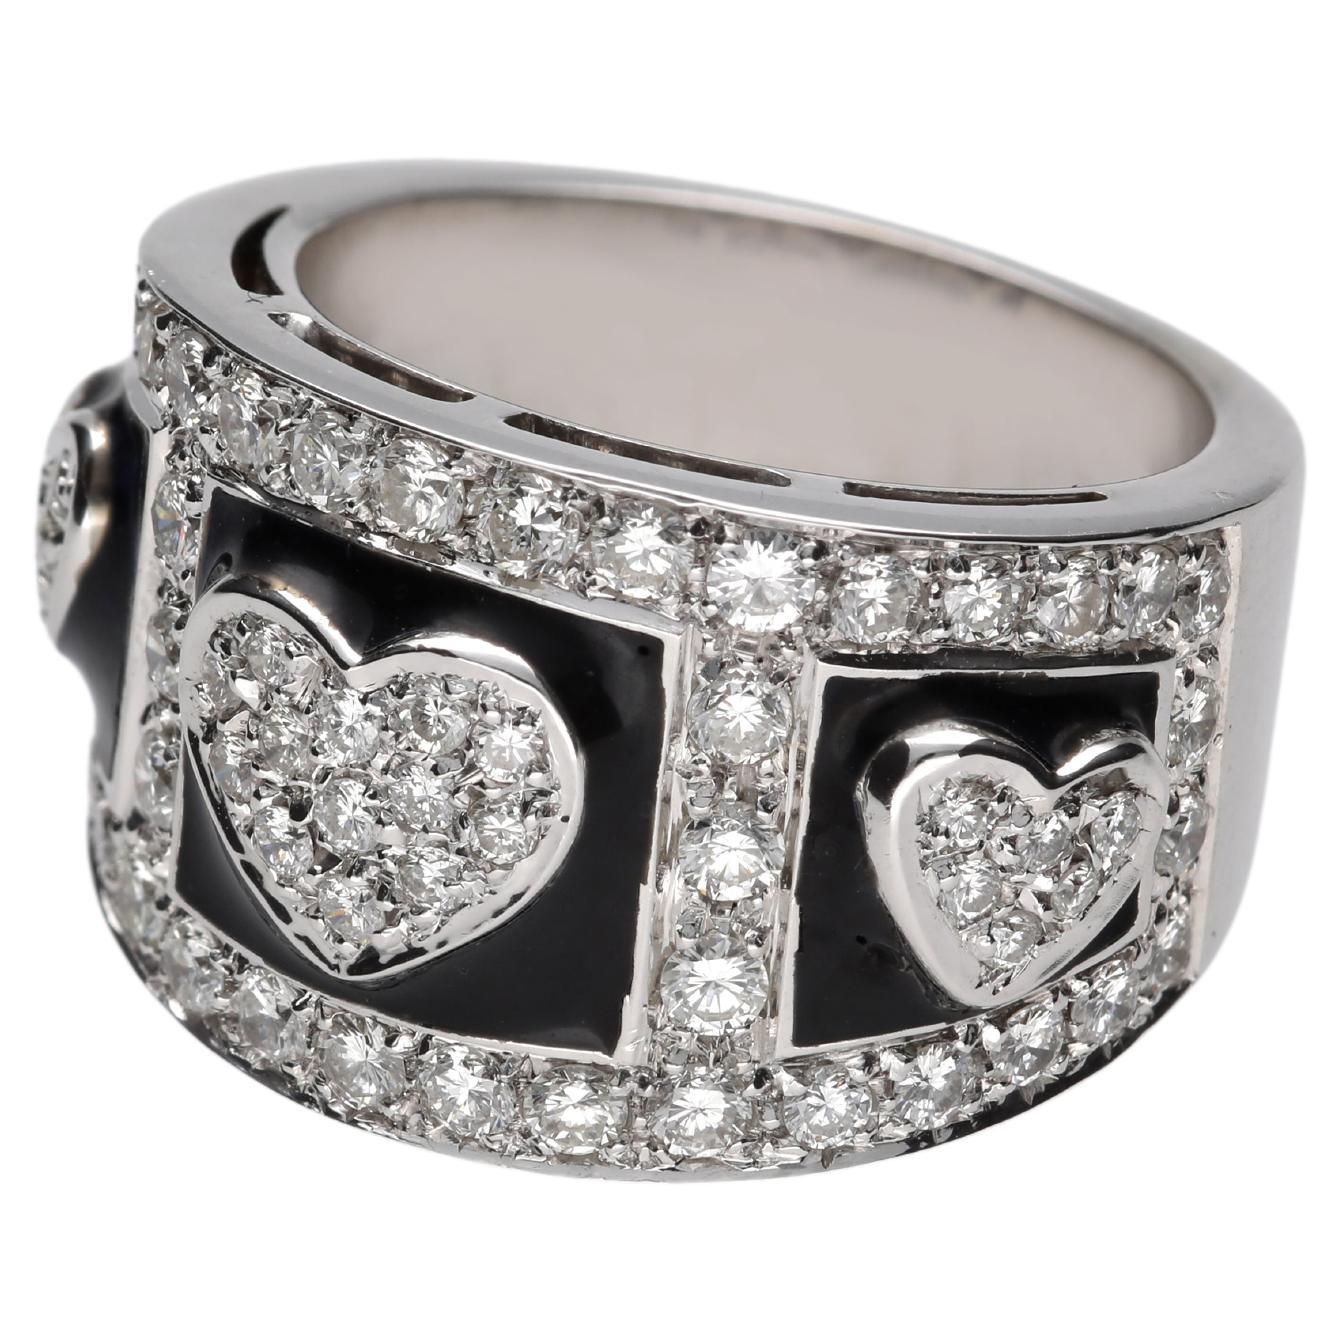 Anello è un modello a fascia a gradazione, questo consente una migliore indossabilità.
L'anello ha tre sezioni con smalto nero con al centro dei cuori con un di pavè di diamanti.
Le sezioni quadrate, dove sono inseriti i tre cuori di diamanti, sono